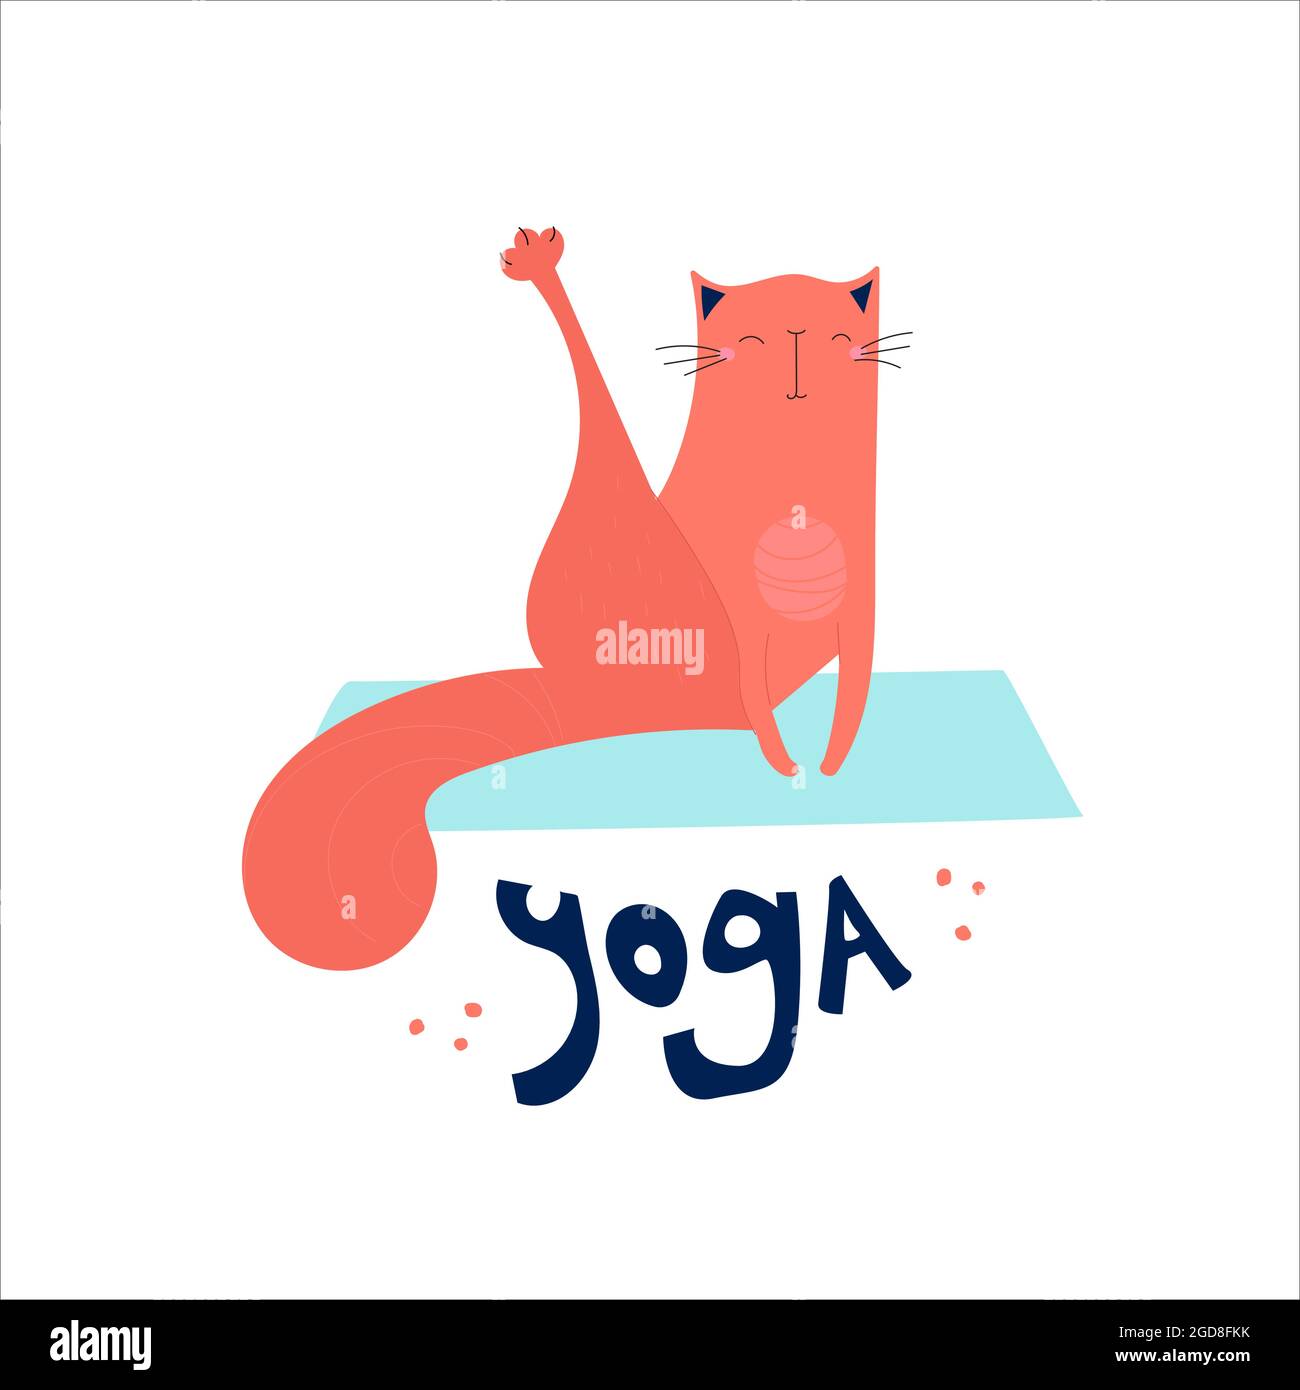 Affiche vectorielle mignonne de chat dessiné à la main et de yoga lettering. Le chat fait des exercices sur un tapis de yoga. Illustration d'un mode de vie sain pour l'impression, les textiles, les tee-shirts, les cartes, les autocollants, affiches. Illustration de Vecteur